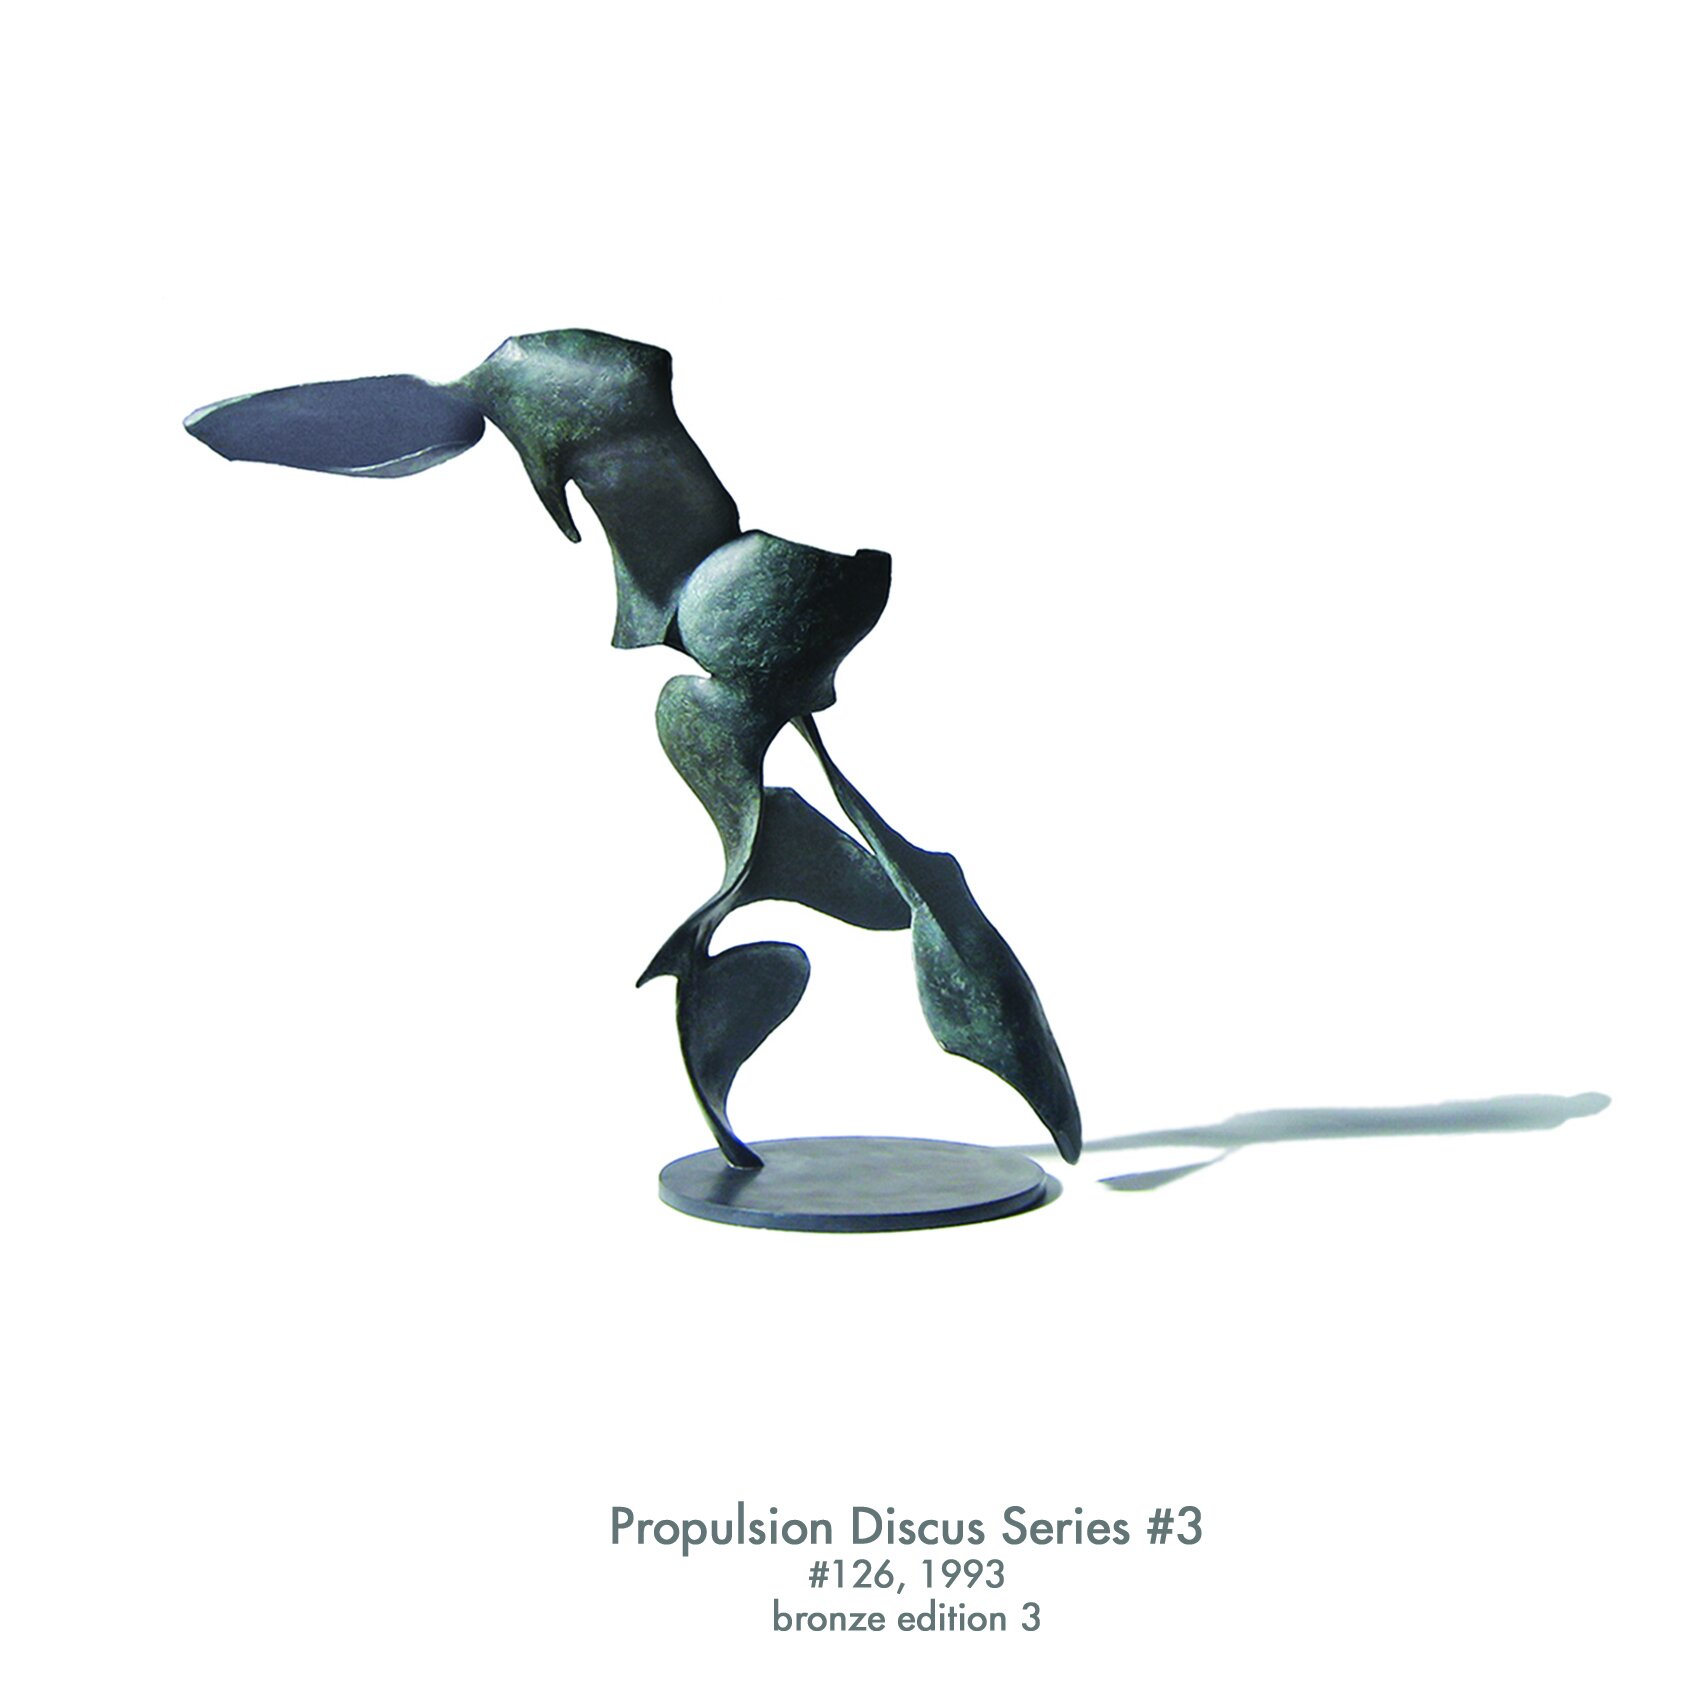 Propulsion Discus series 3, 1993, bronze, #126